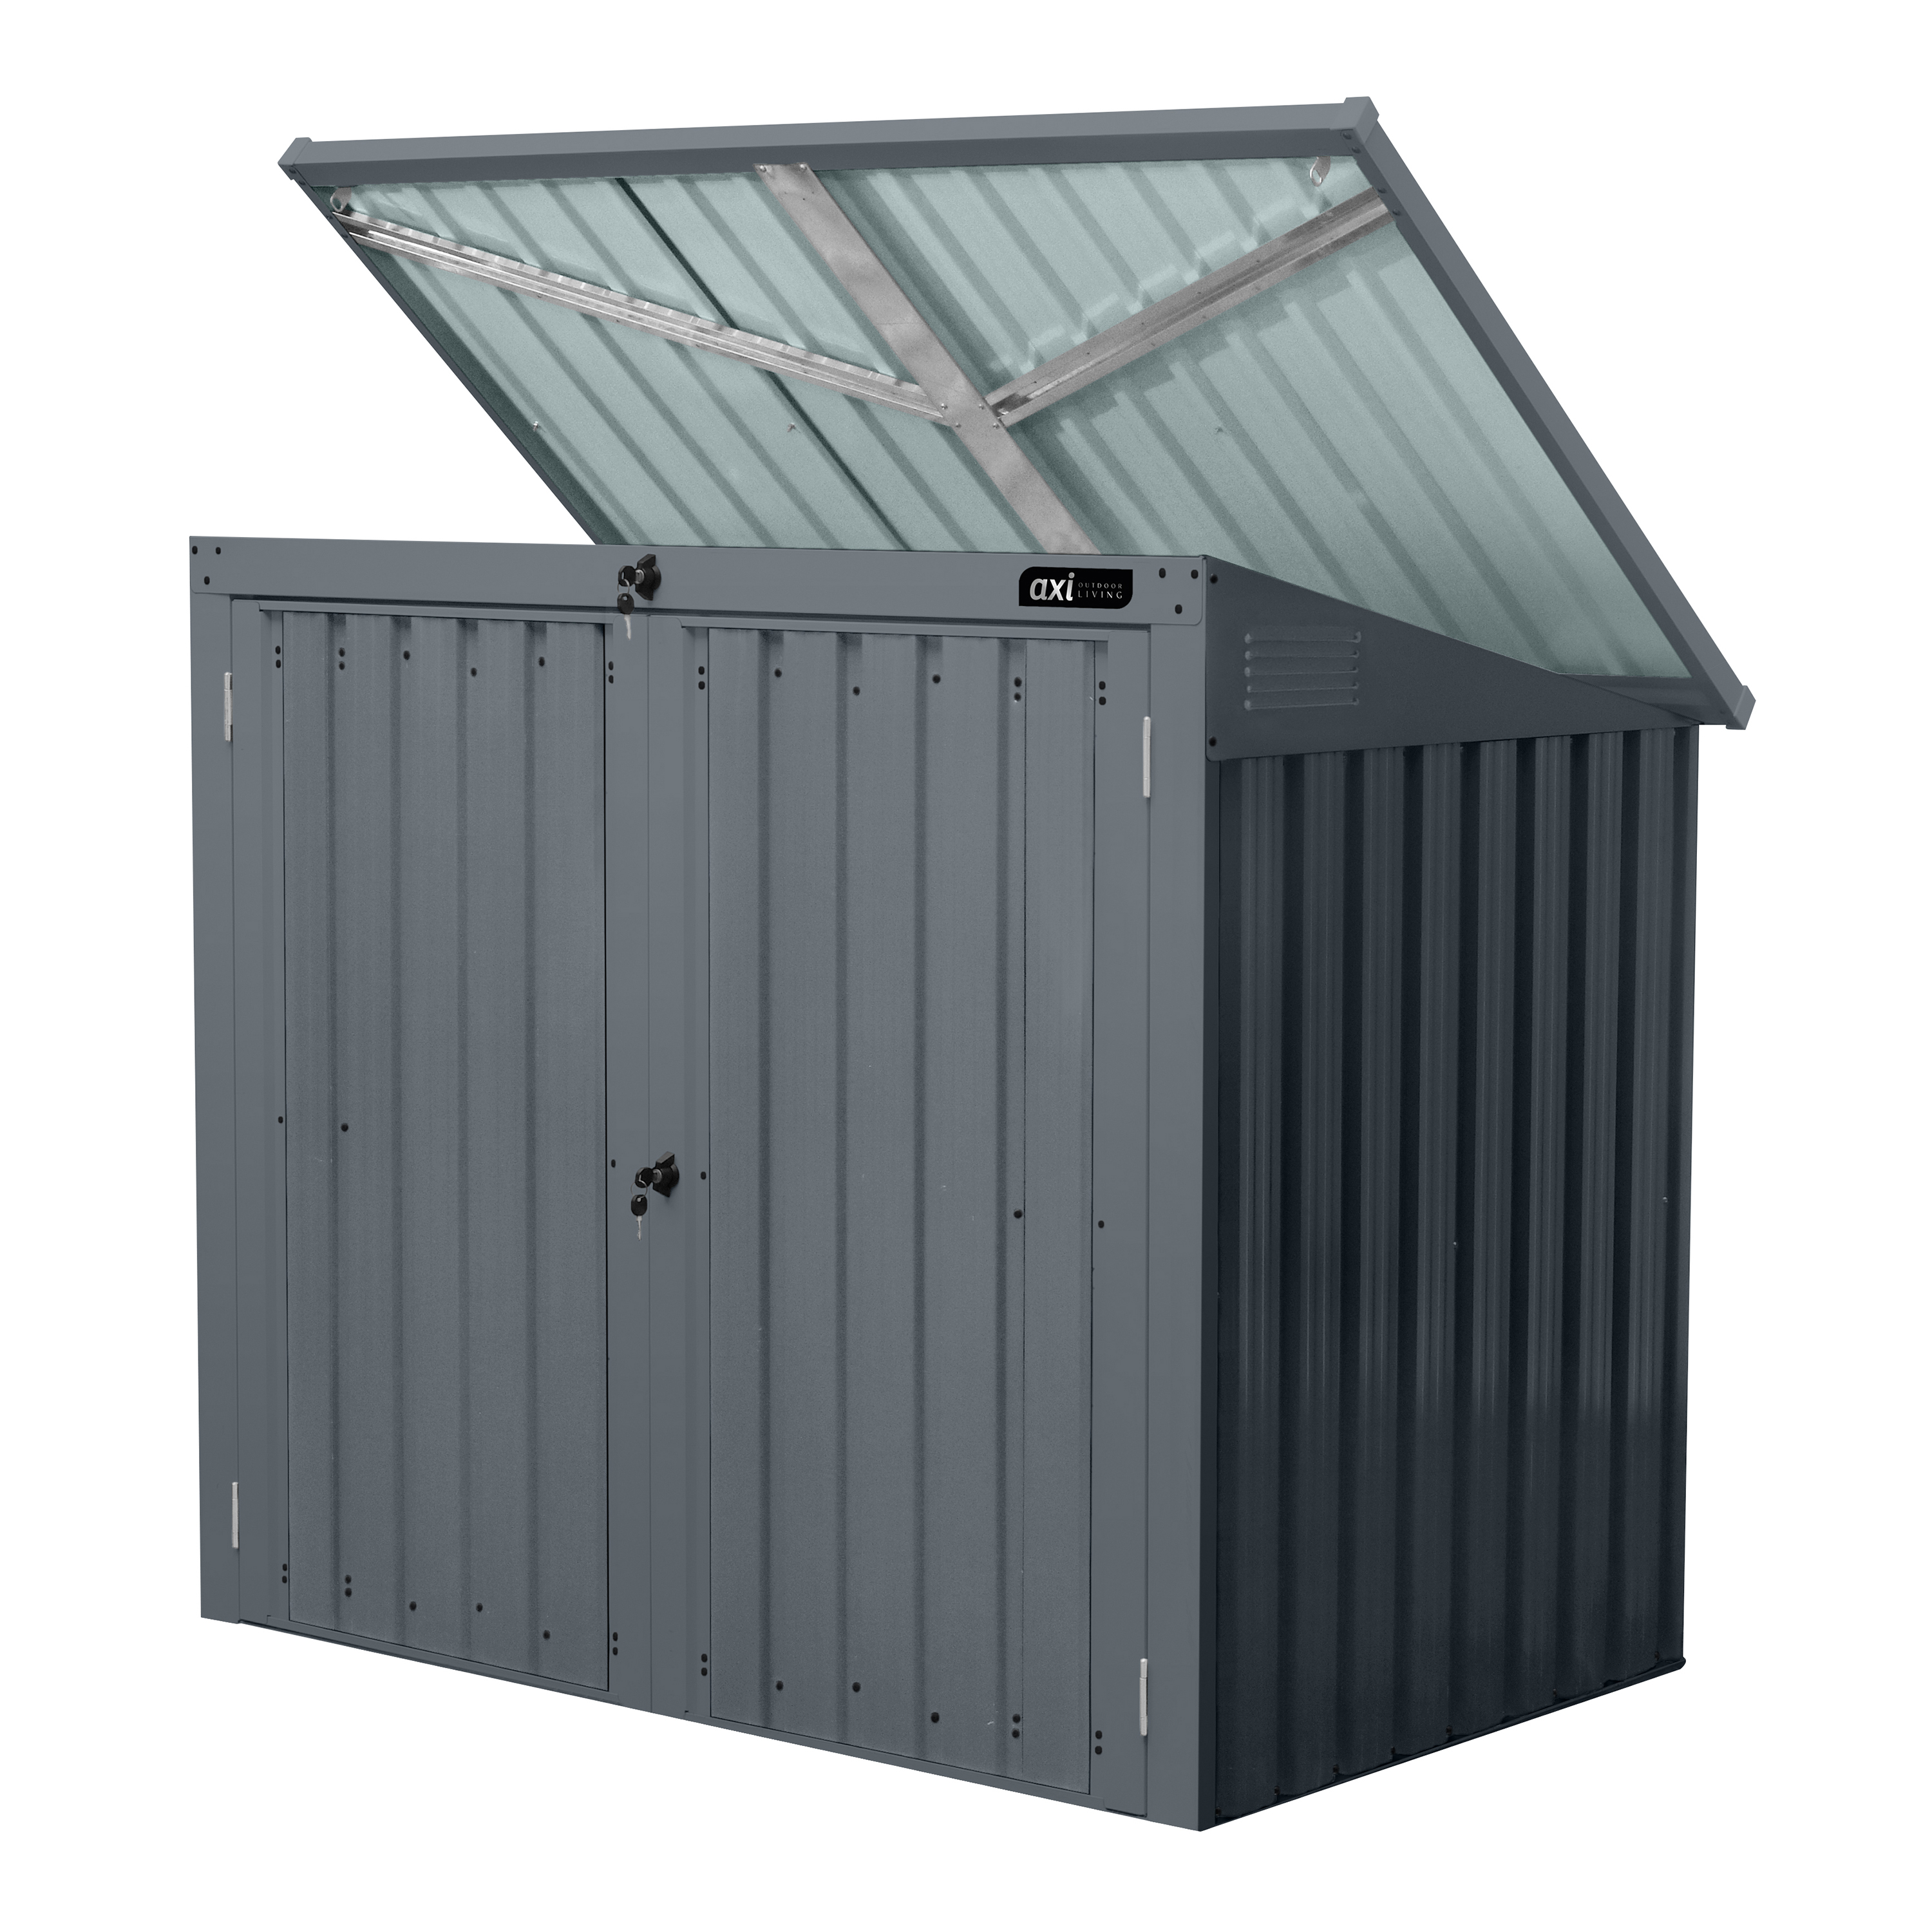 AXI Oscar Metall Mülltonnenbox Gartenschrank Anthrazit - 2 Tonnen